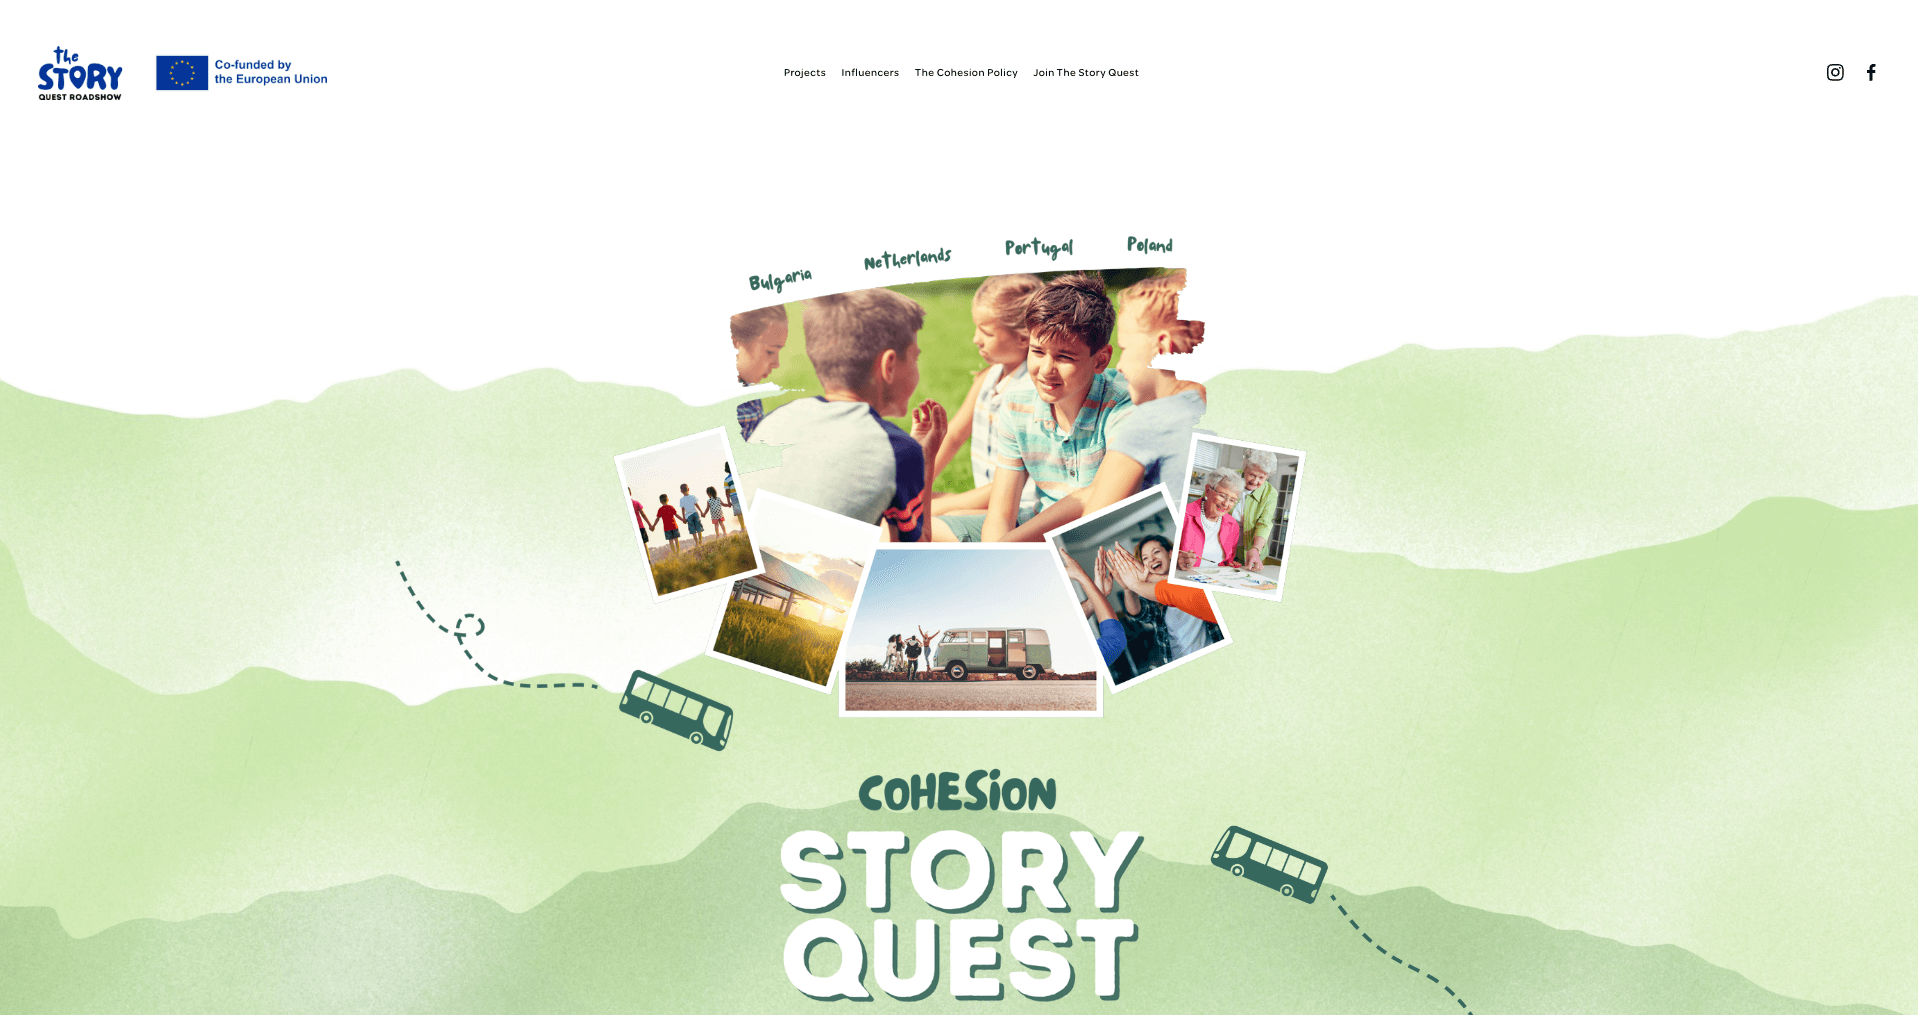 projekt Story Cohesion Quest